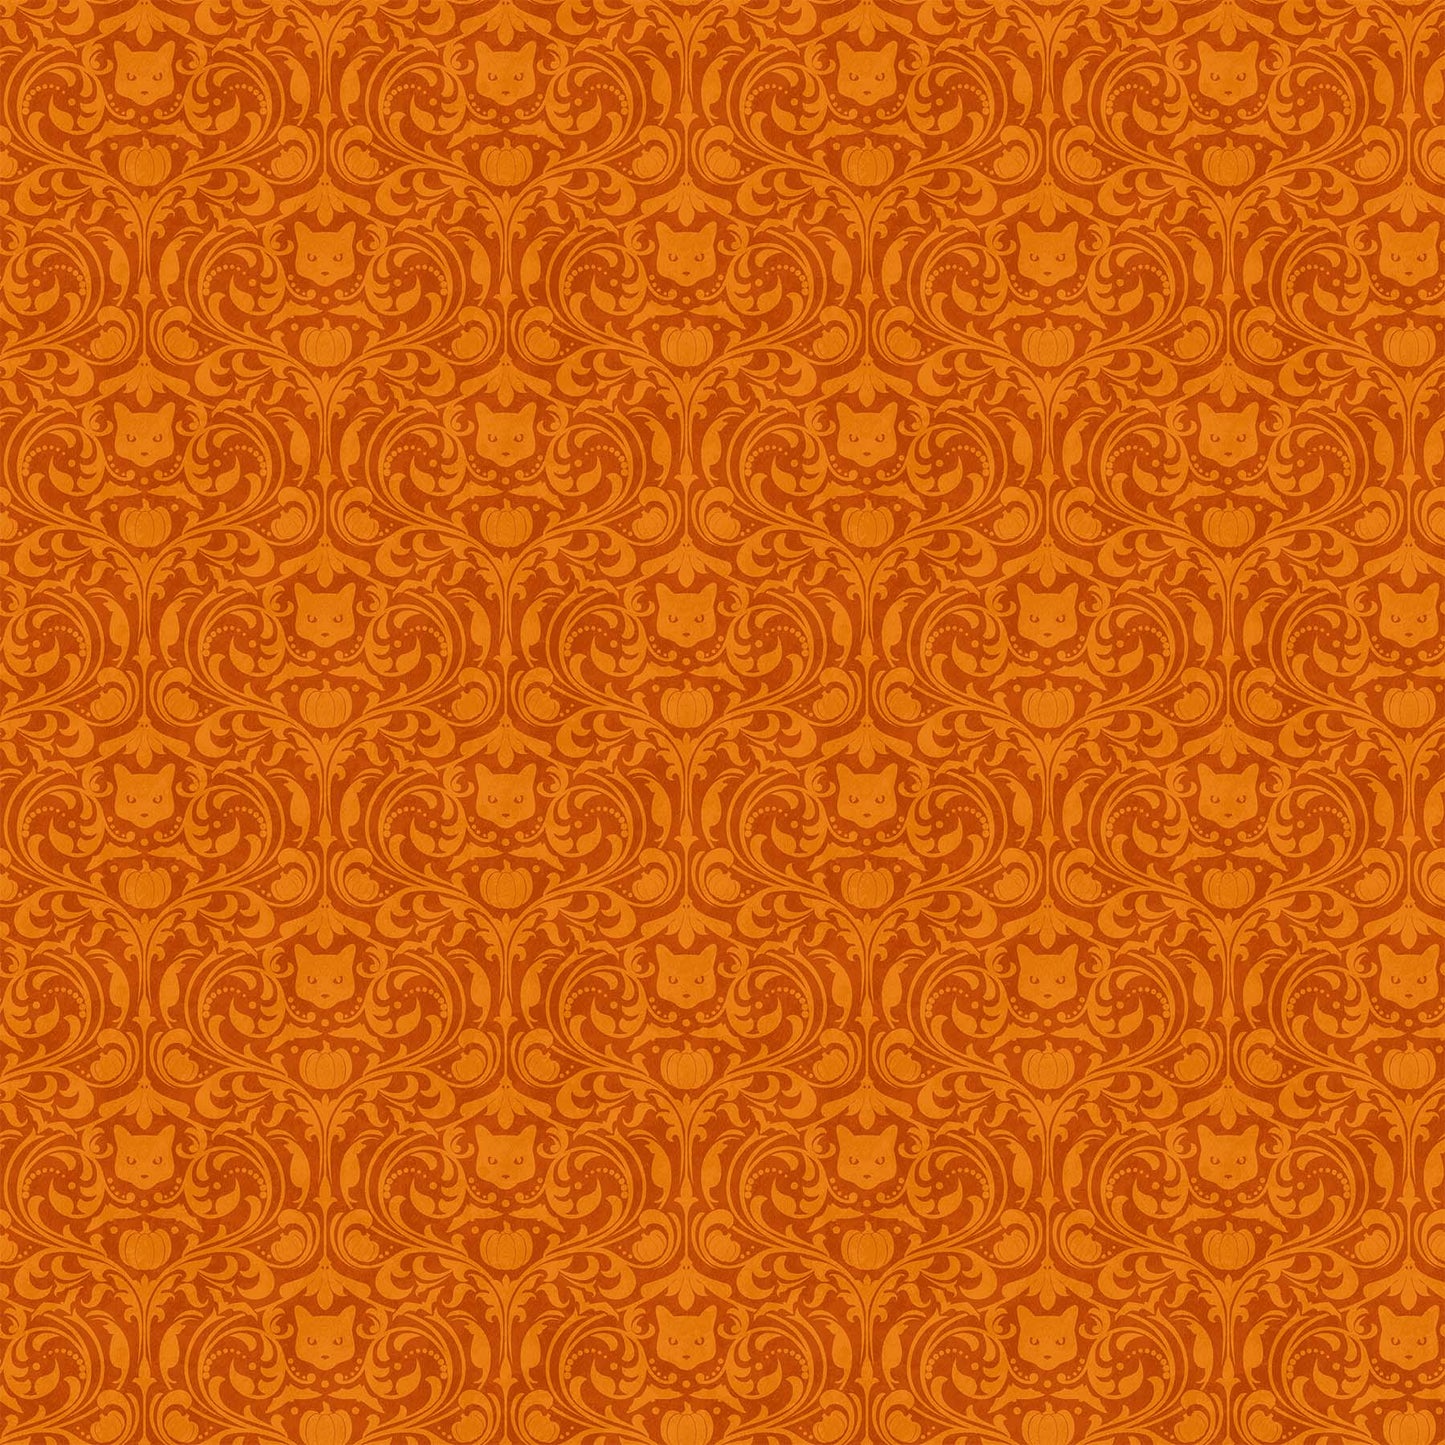 New Arrival: Hallow's Eve by Cerrito Creek Studio Orange  27091-54 Cotton Woven Fabric